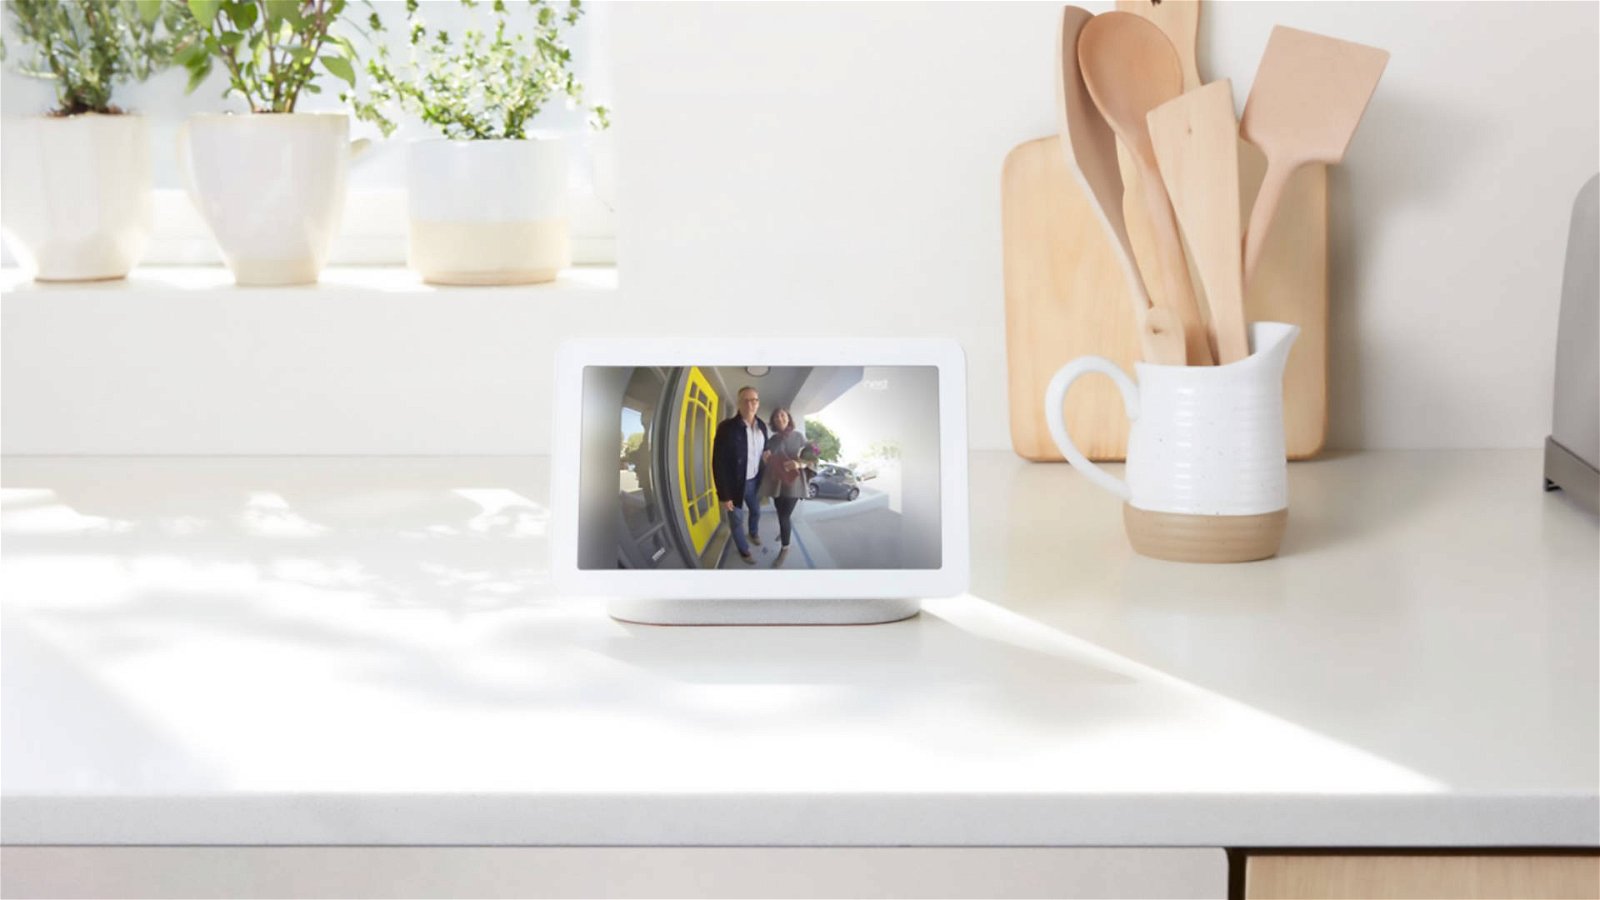 Immagine di Google Nest Hub Max, il nuovo smart display con webcam e speaker integrati